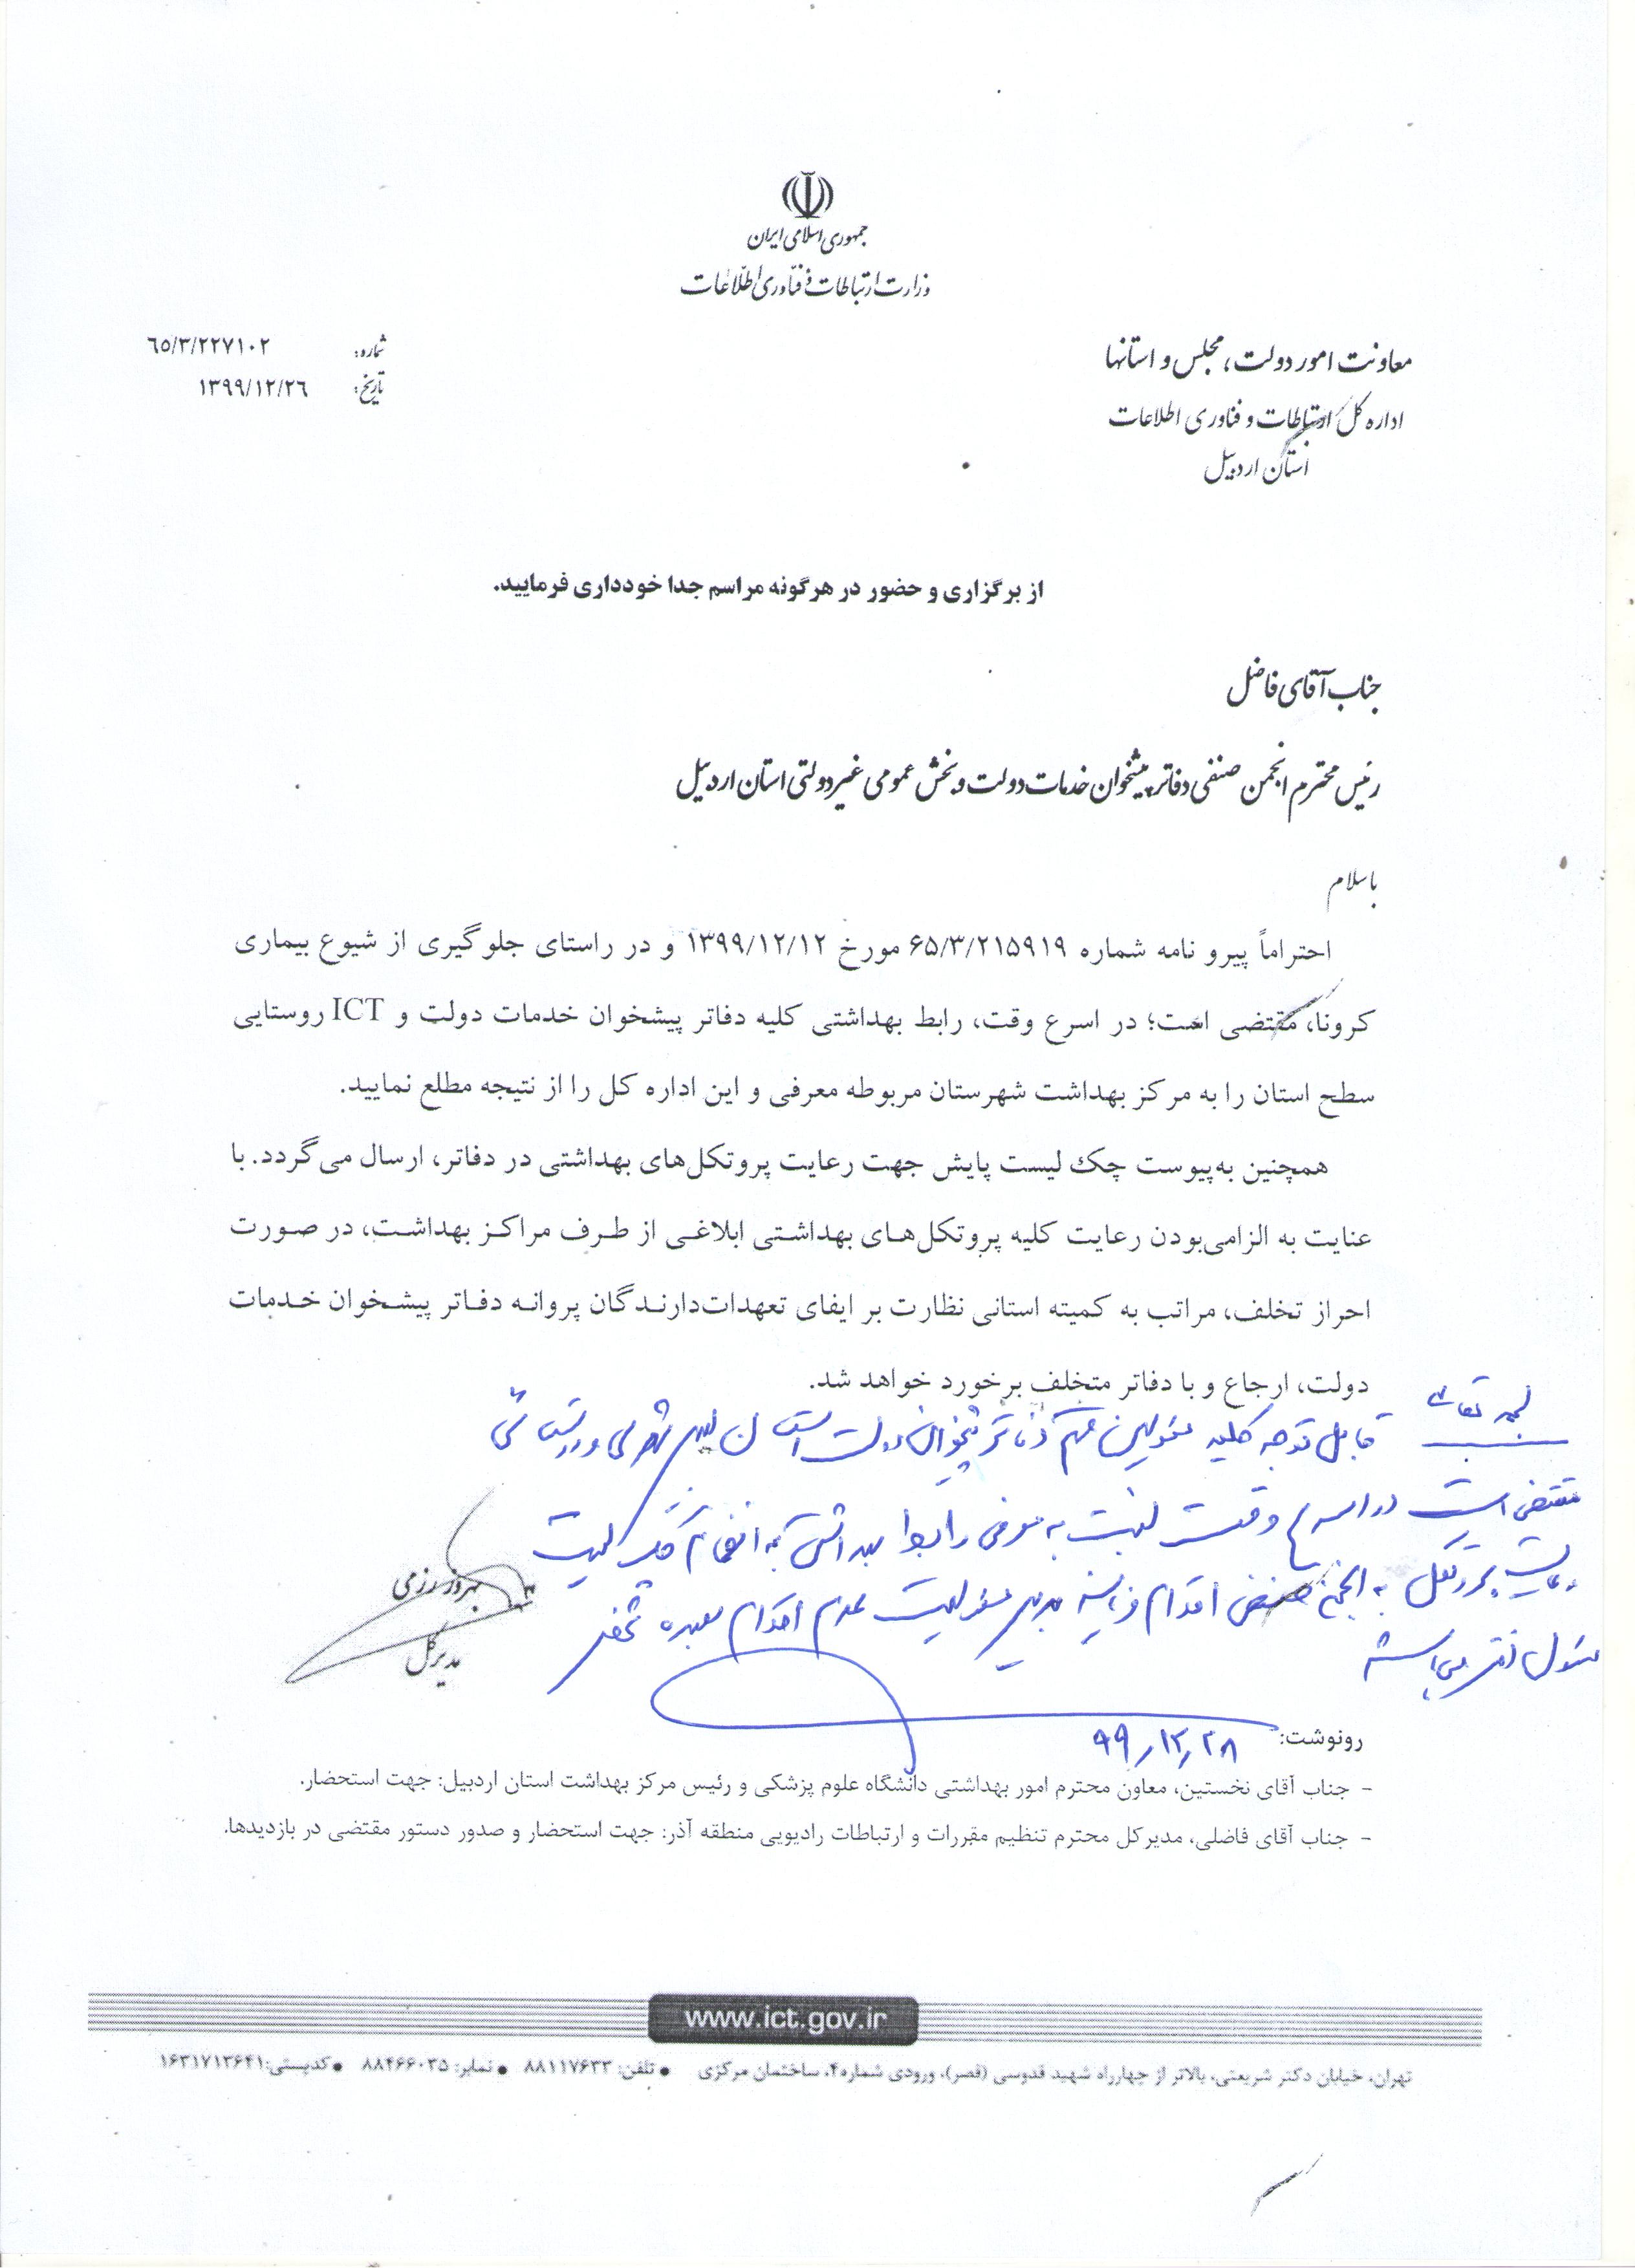 قابل توجه کلیه دفاتر پیشخوان خدمات دولت استان اردبیل(معرفی رابط بهداشتی)